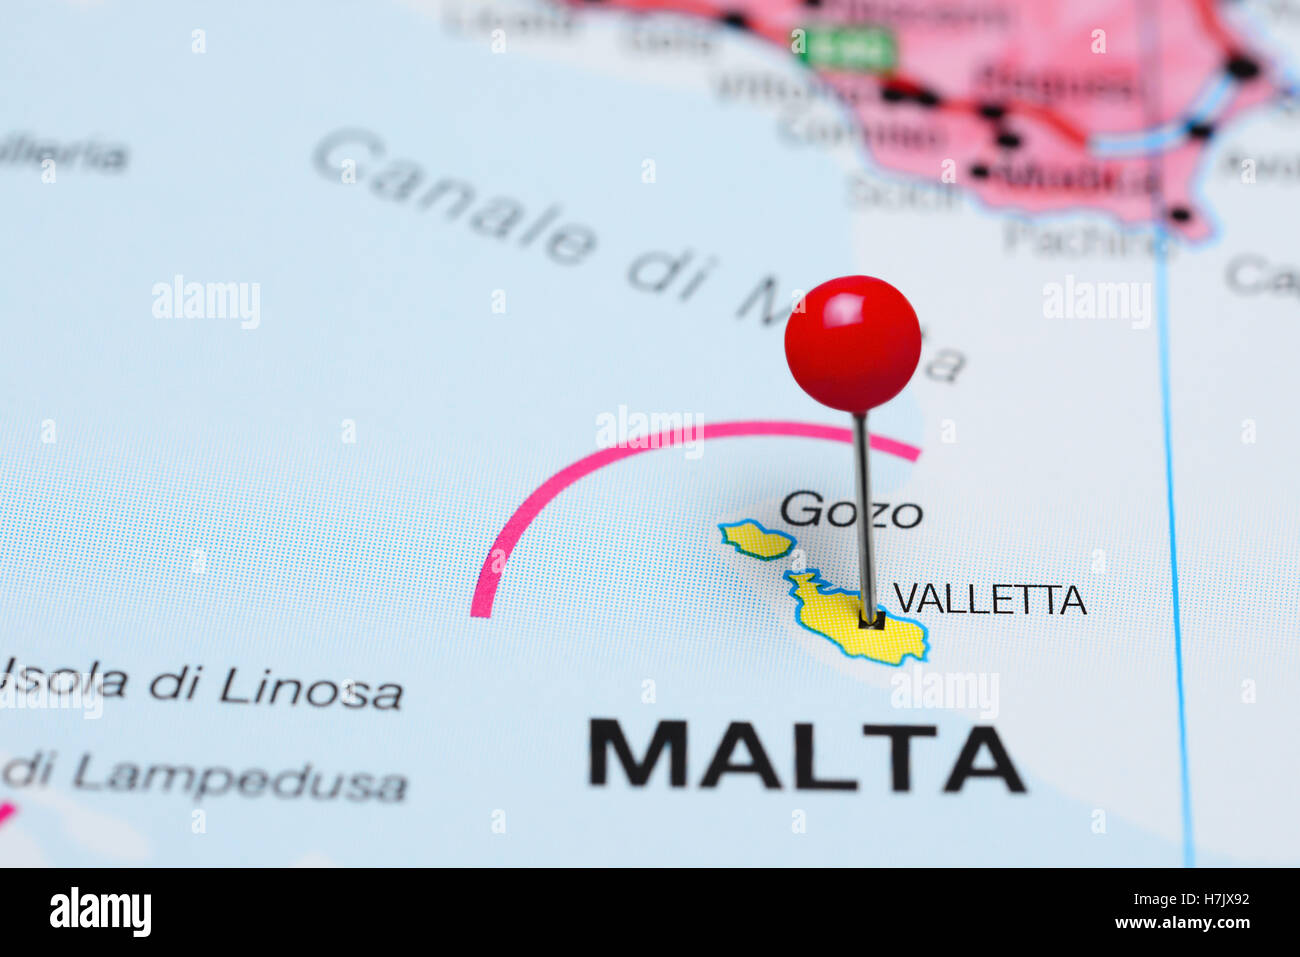 Valletta pinned on a map of Malta Stock Photo